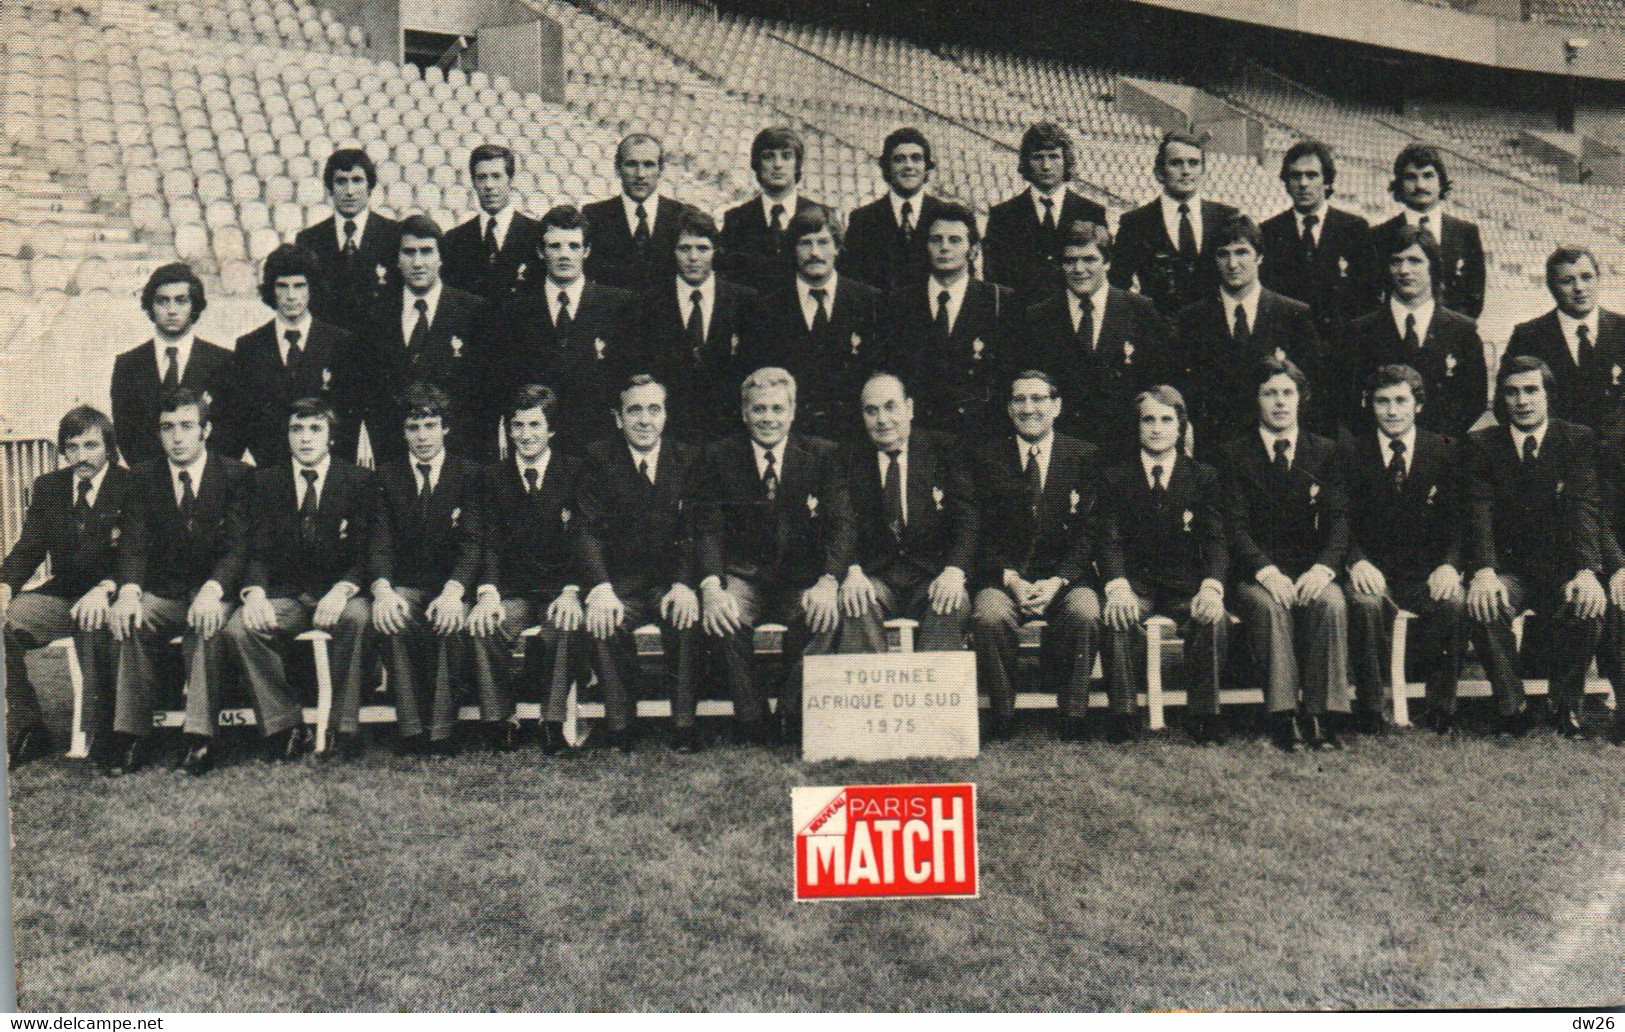 Photo De Groupe: Equipe De France De Rugby, Tournée Afrique Du Sud 1975 - Publicité Paris Match - Sport